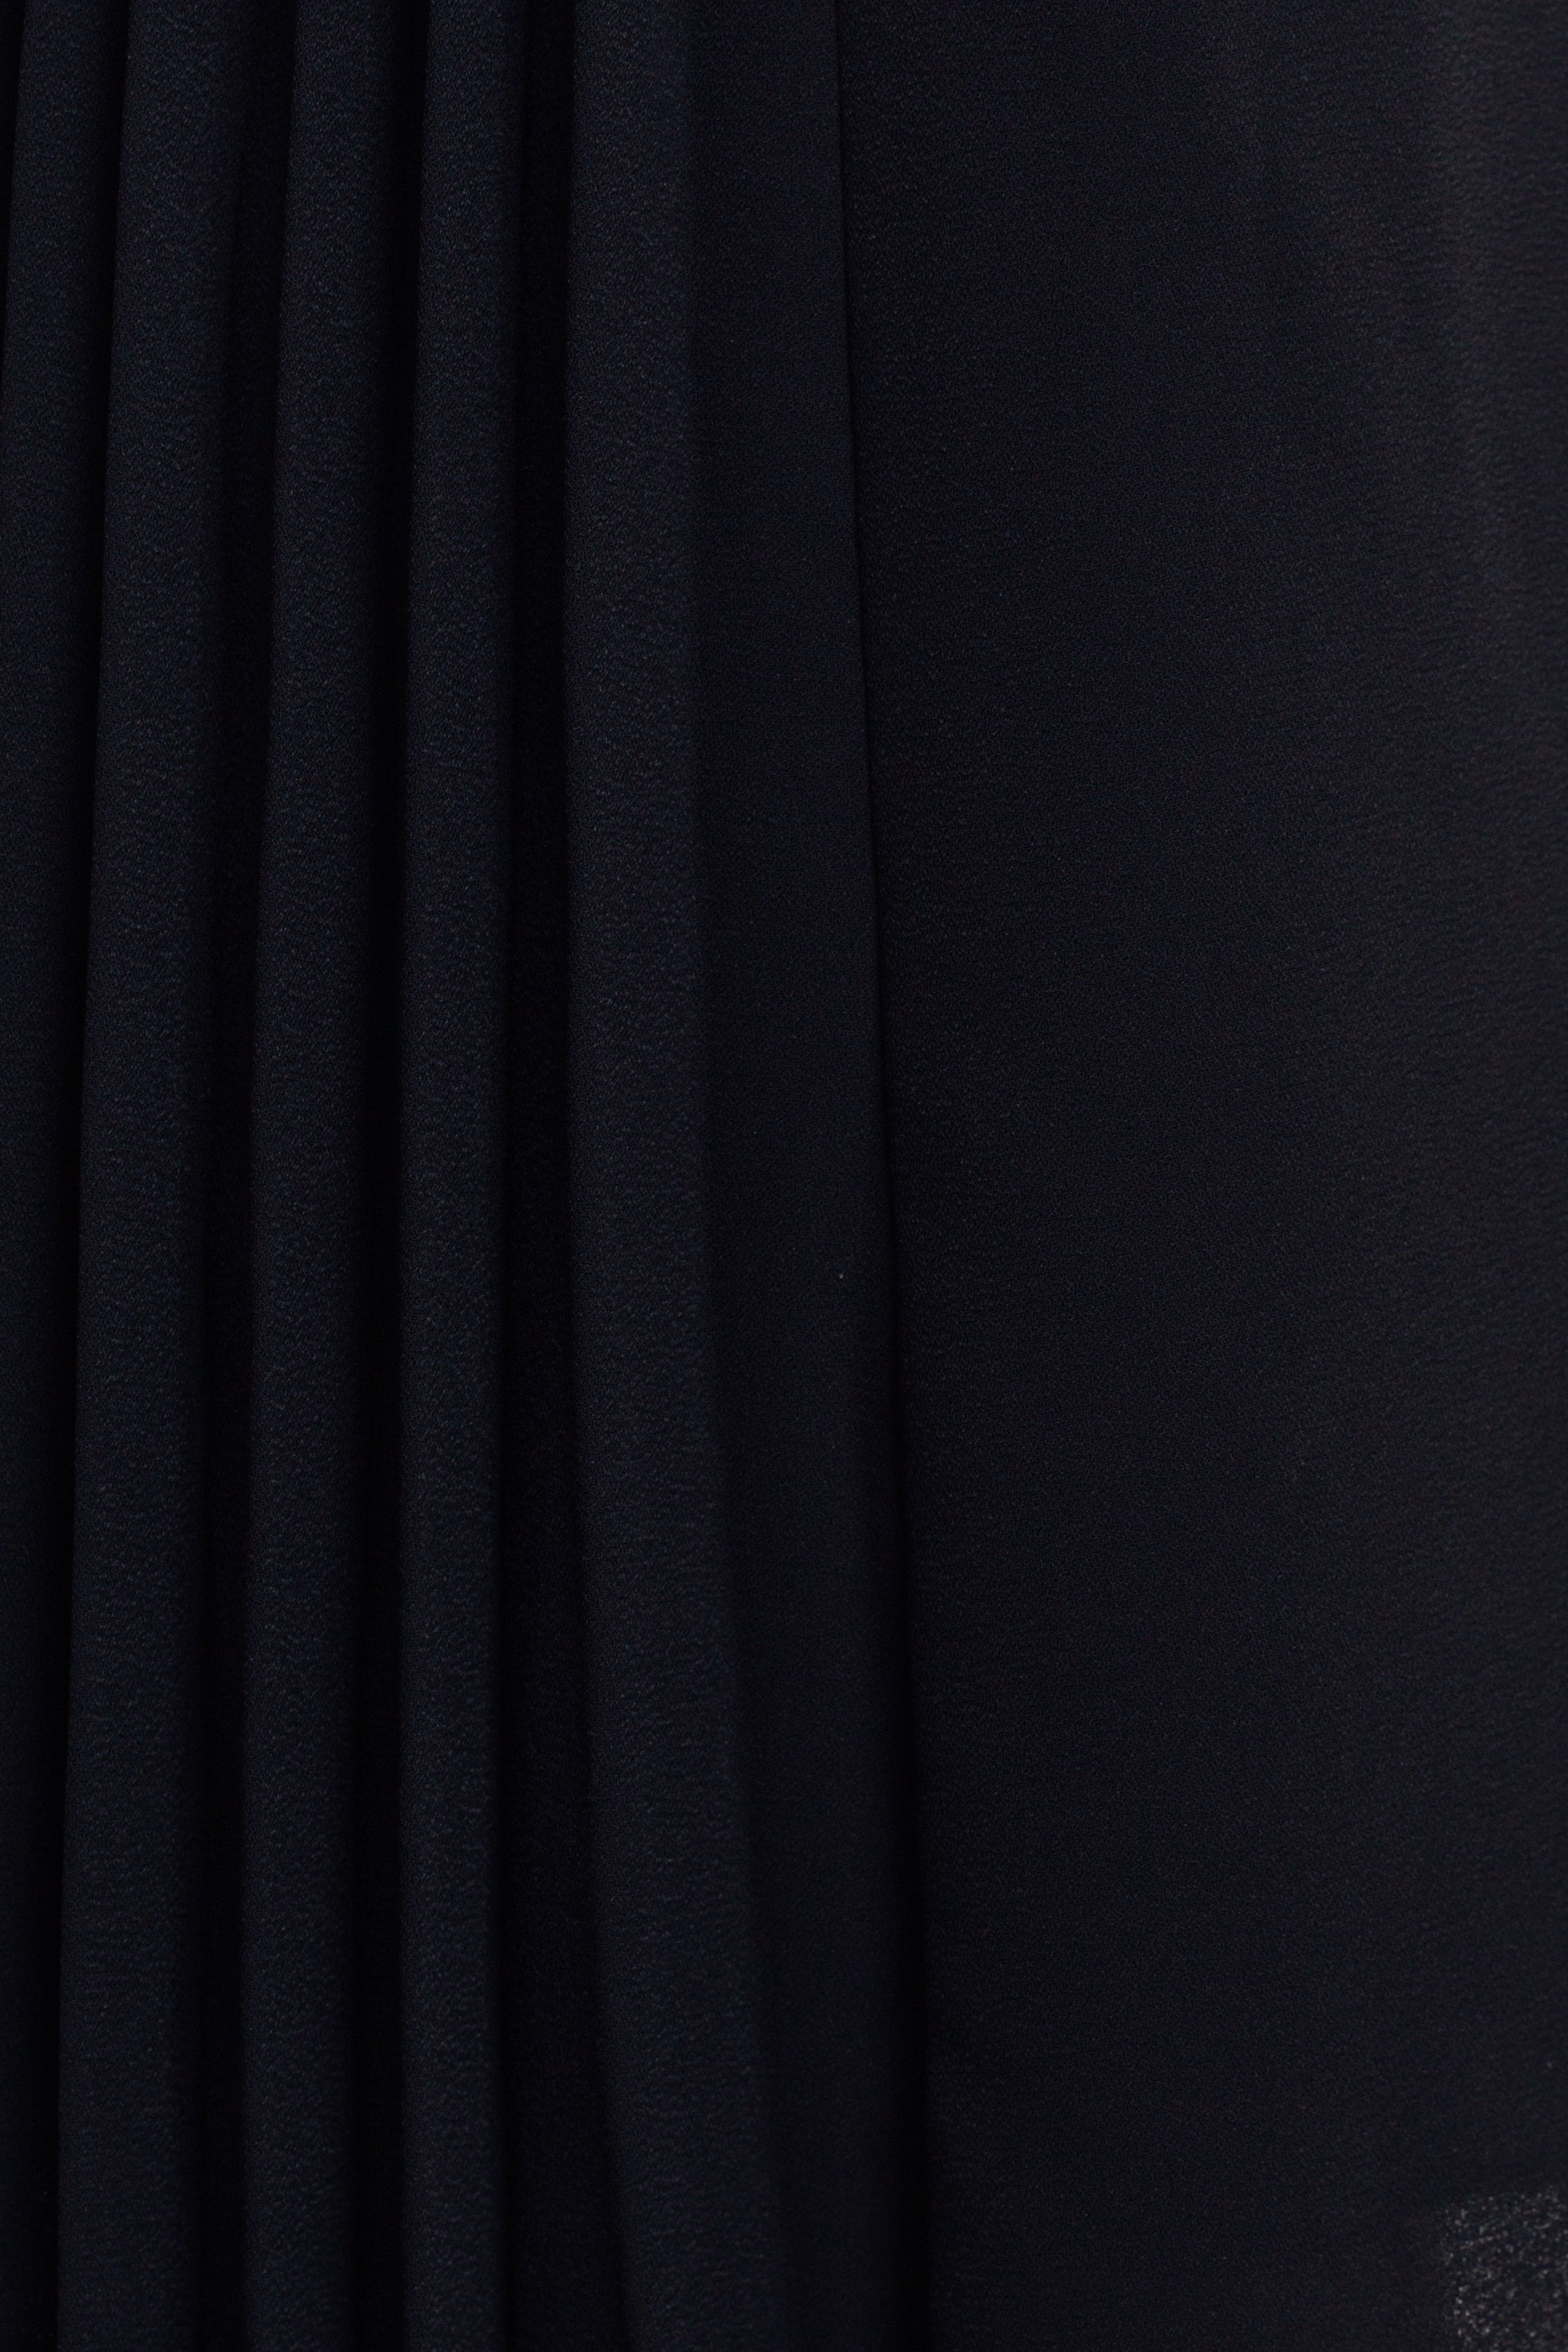 Asymmetric Pleated Dress in Black